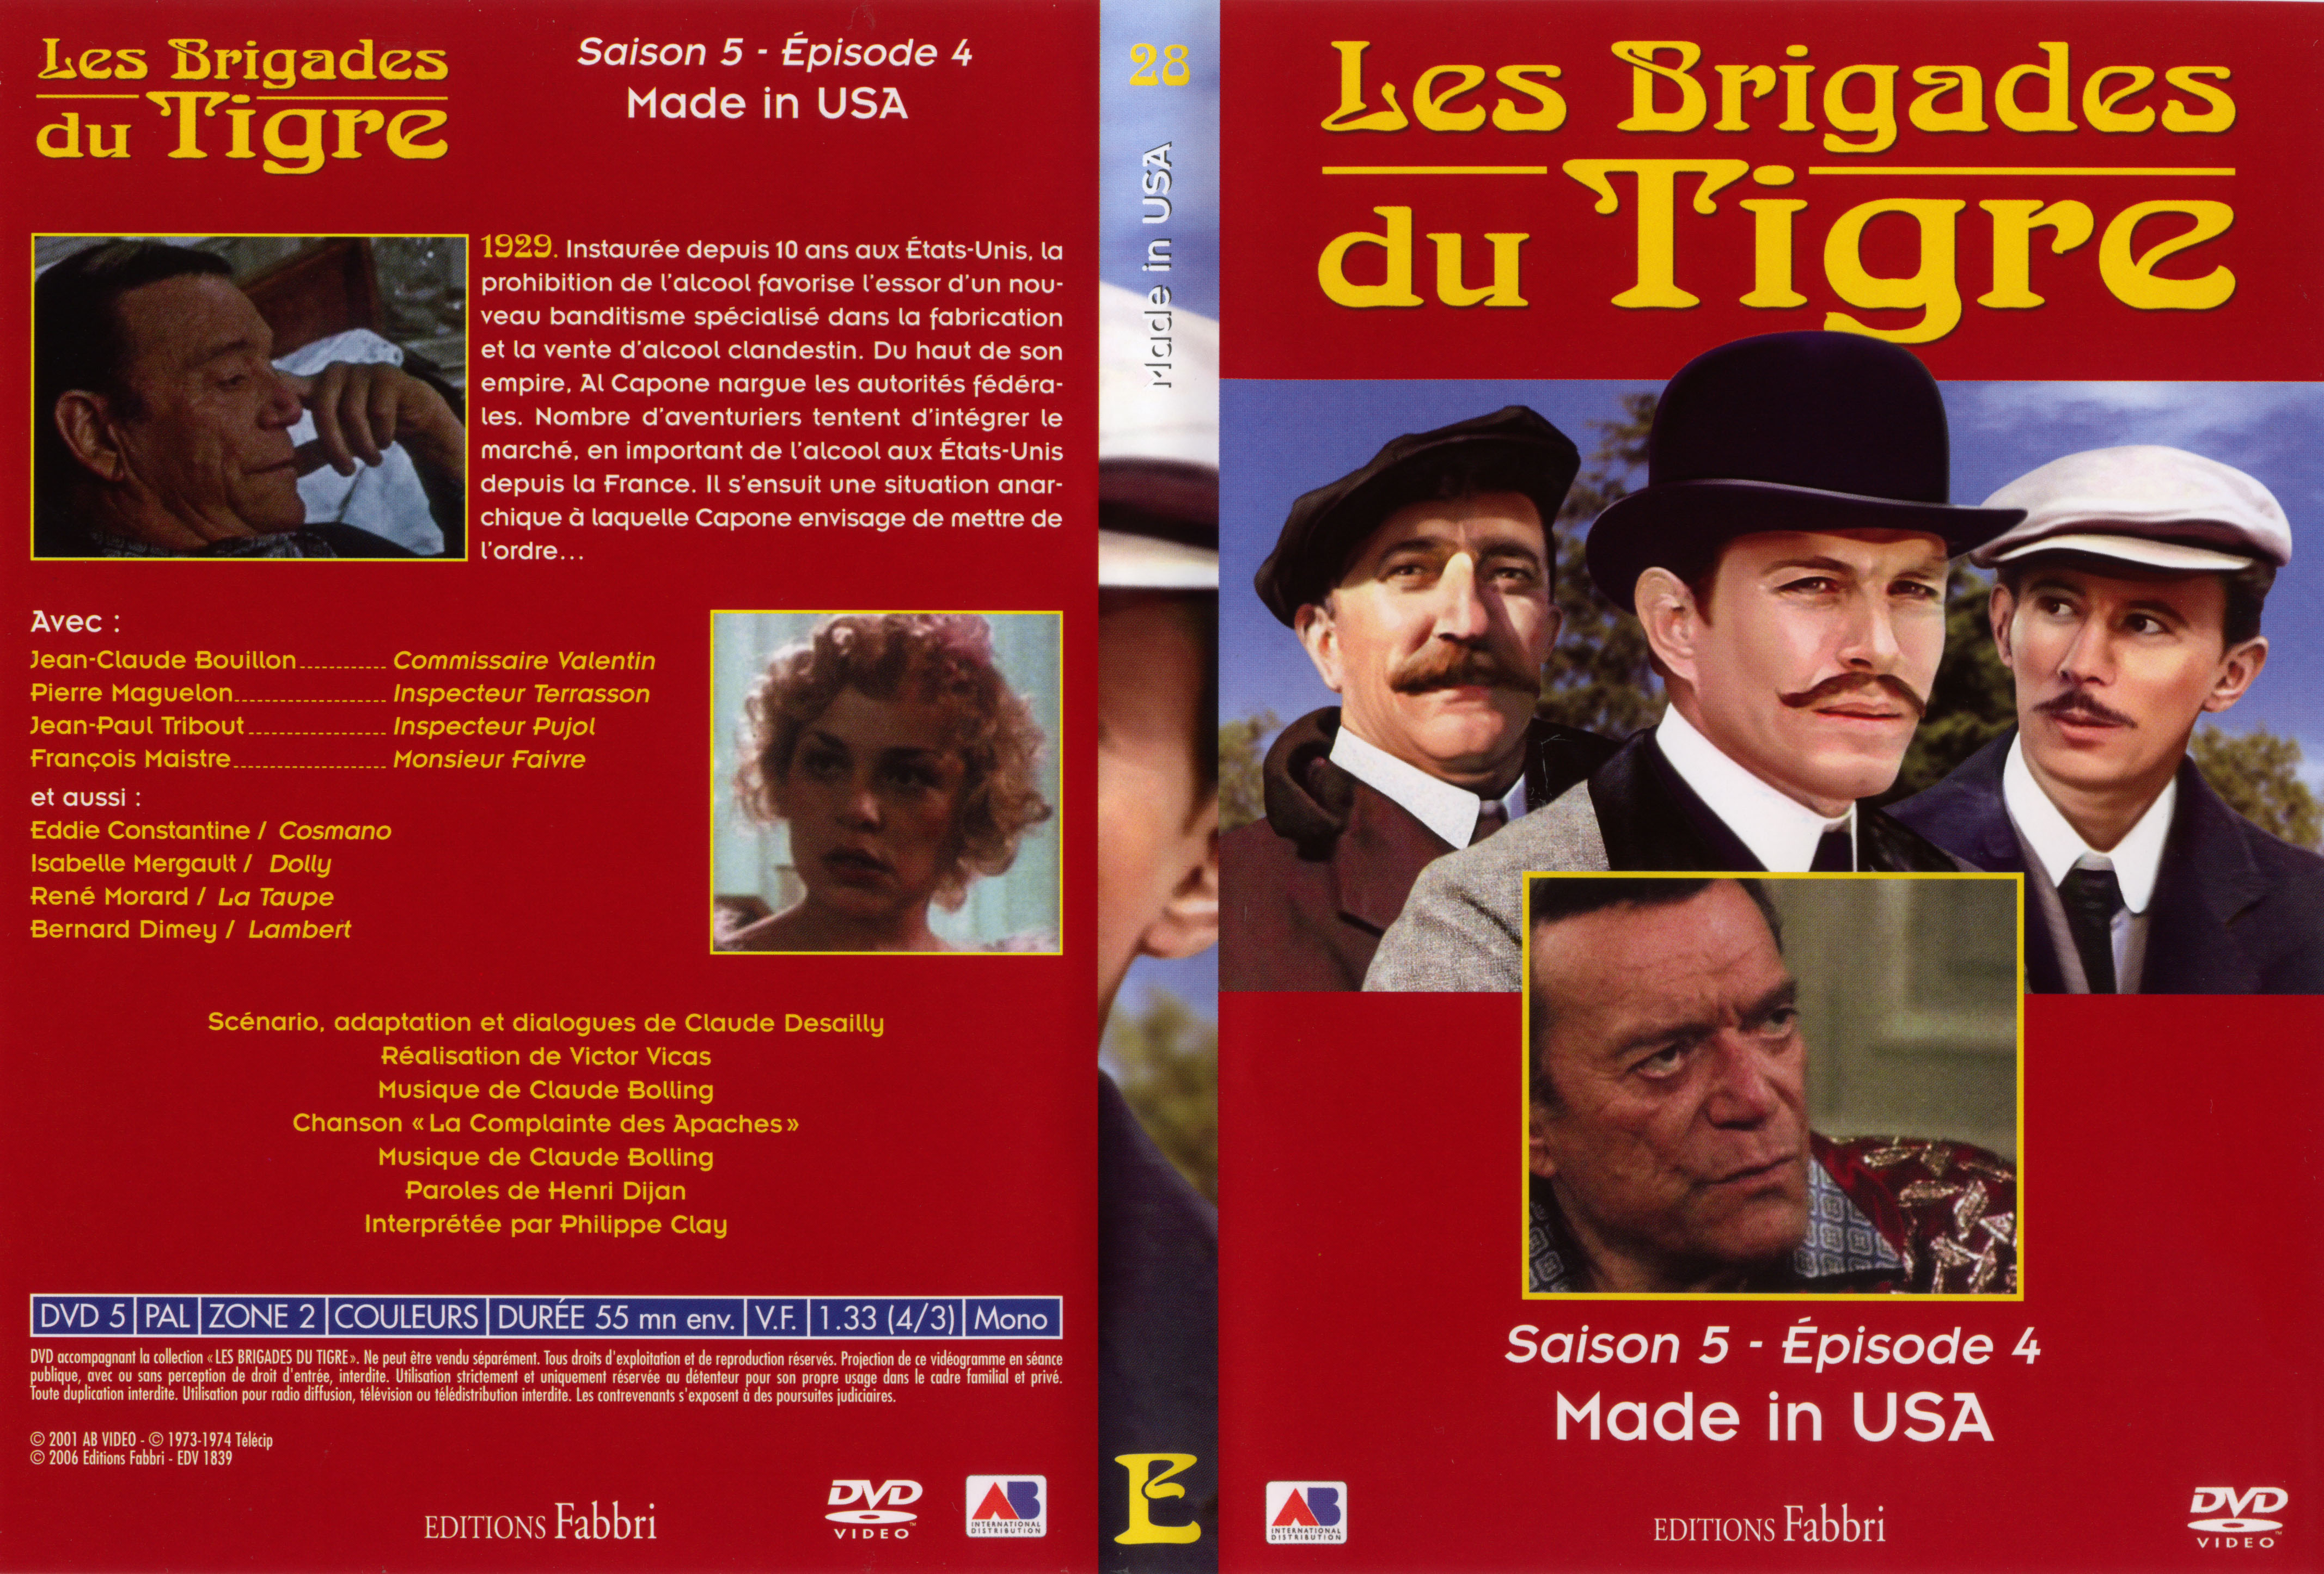 Jaquette DVD Les brigades du tigre saison 5 pisode 4